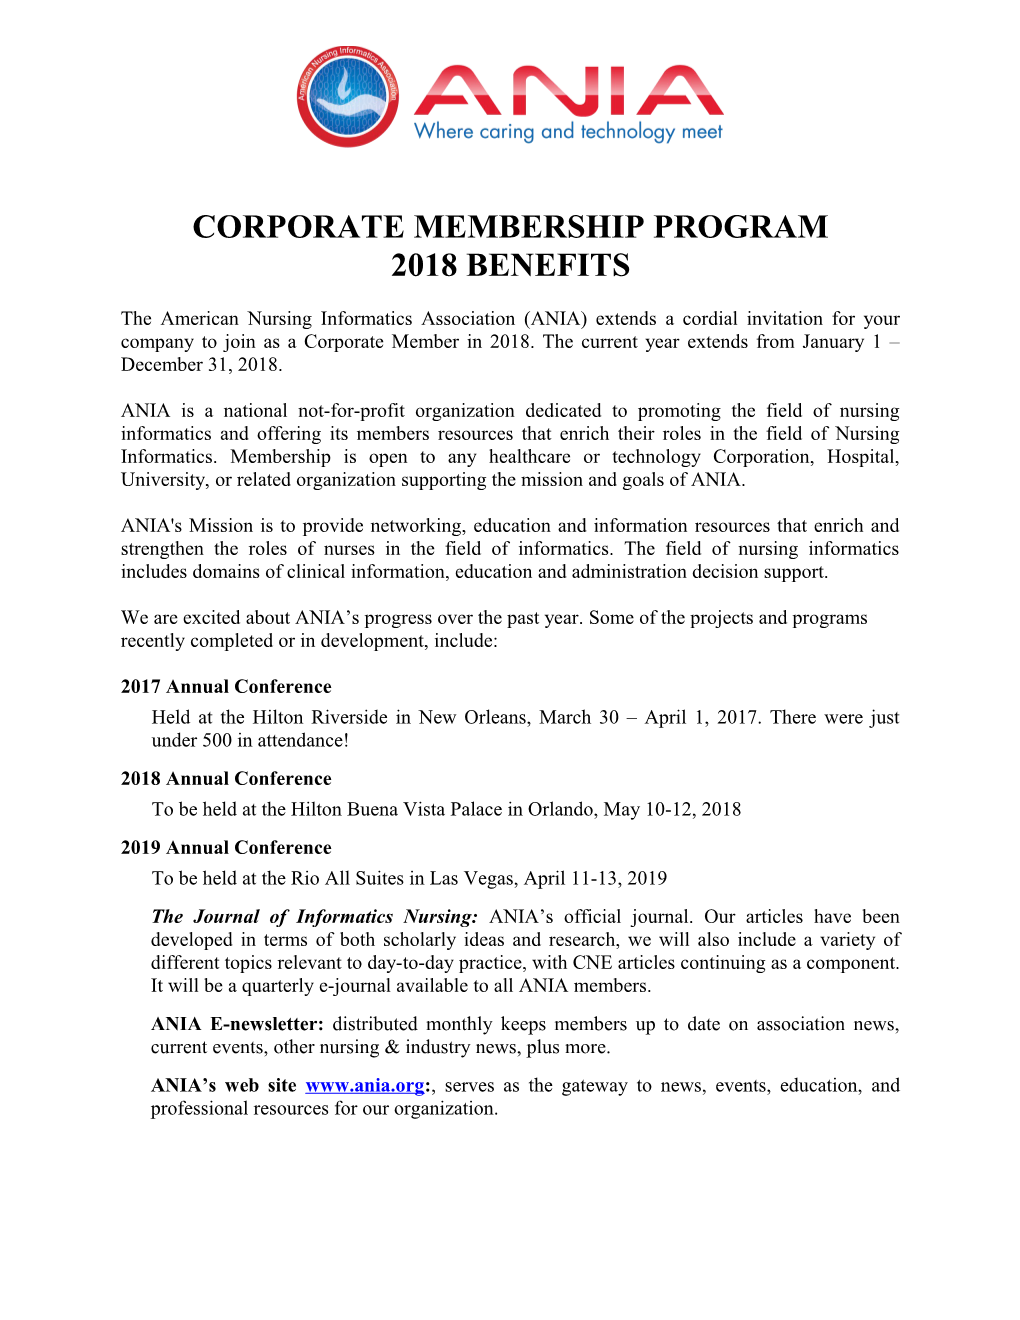 Aaacn Corporate Membership